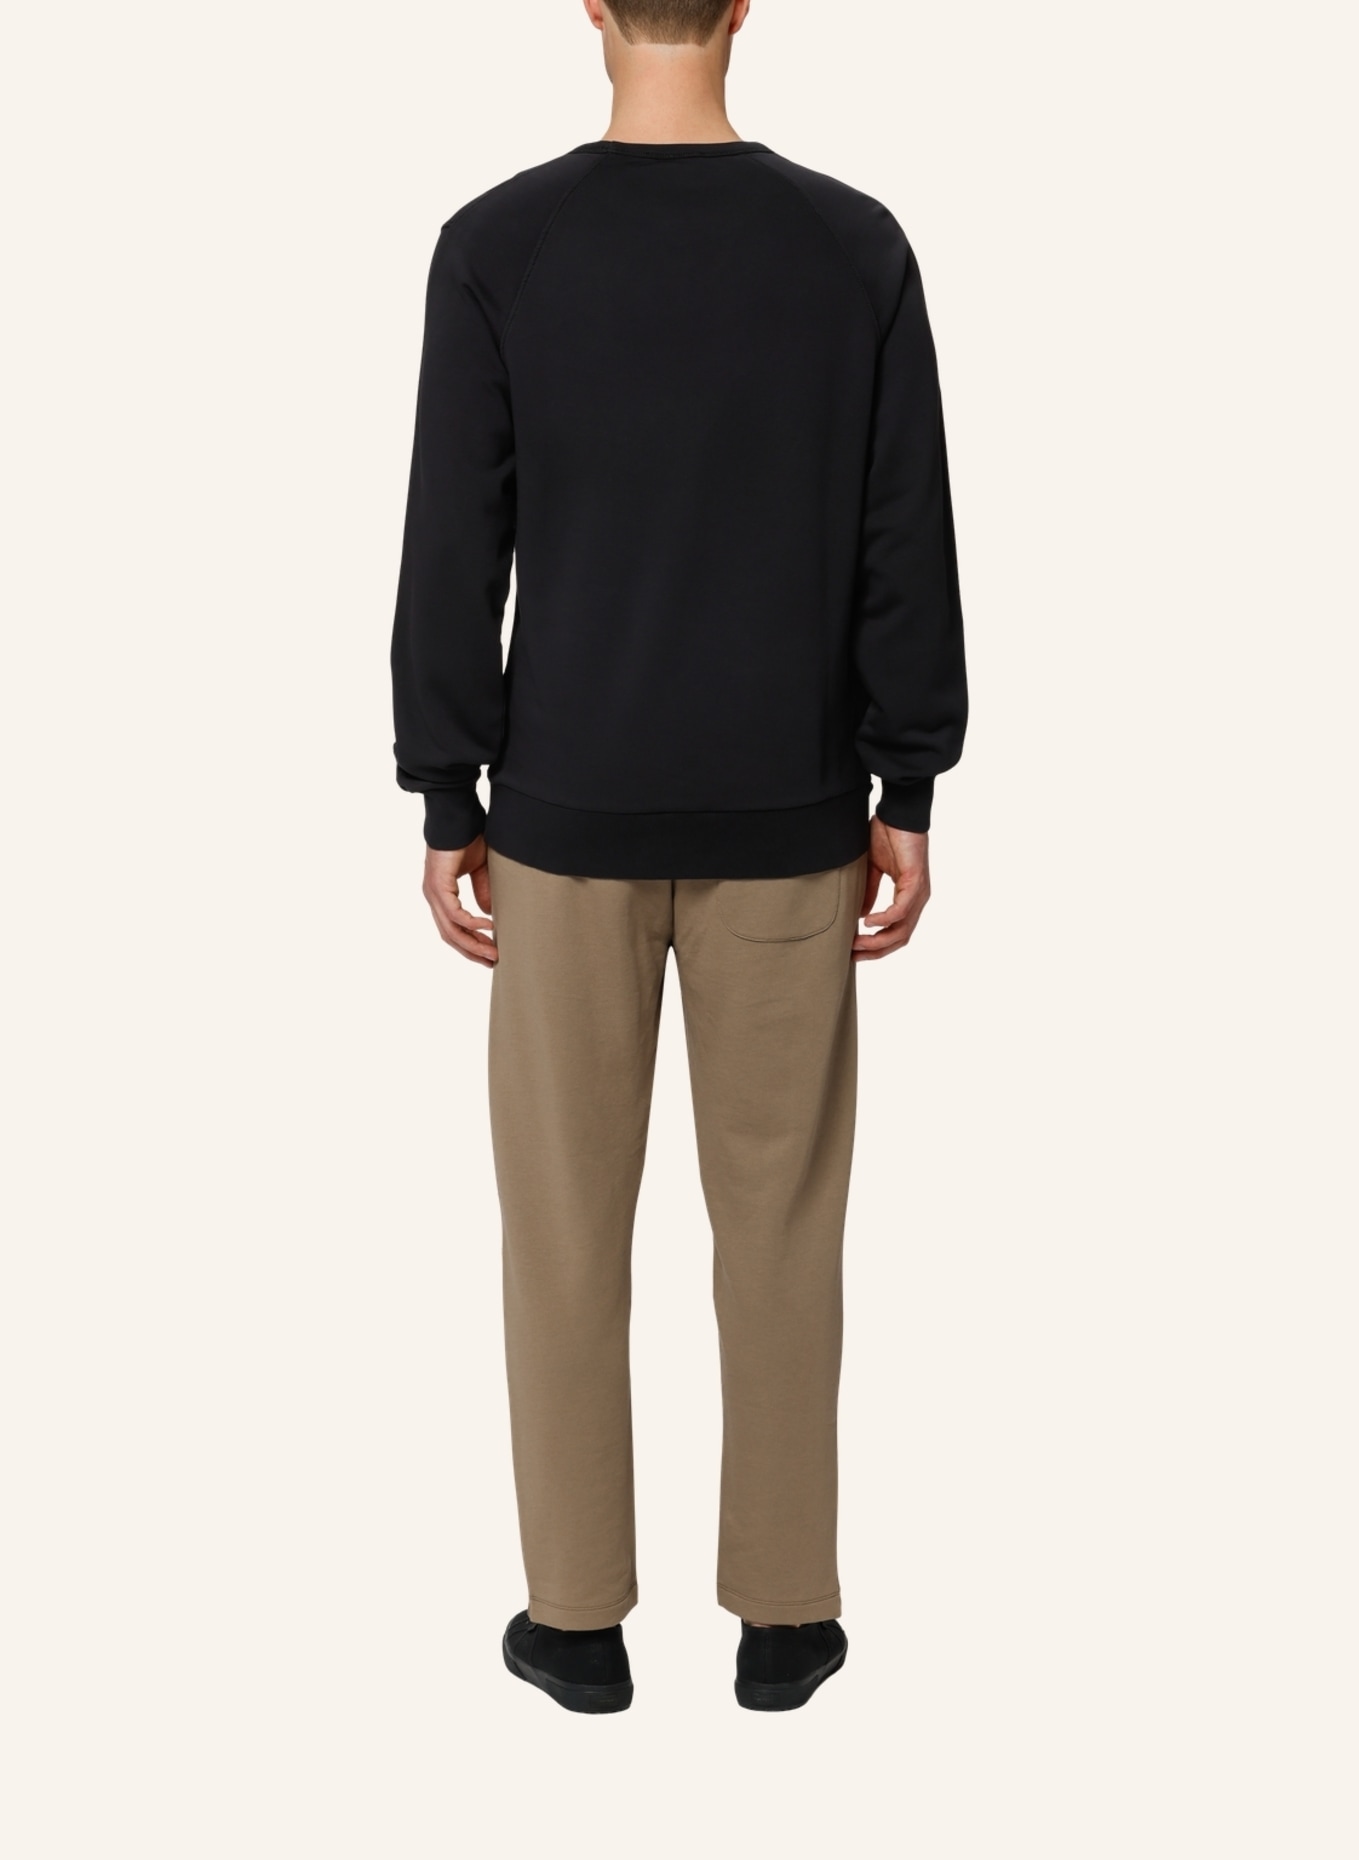 TRUSTED HANDWORK Sweatshirt Regular Fit, Farbe: SCHWARZ (Bild 4)